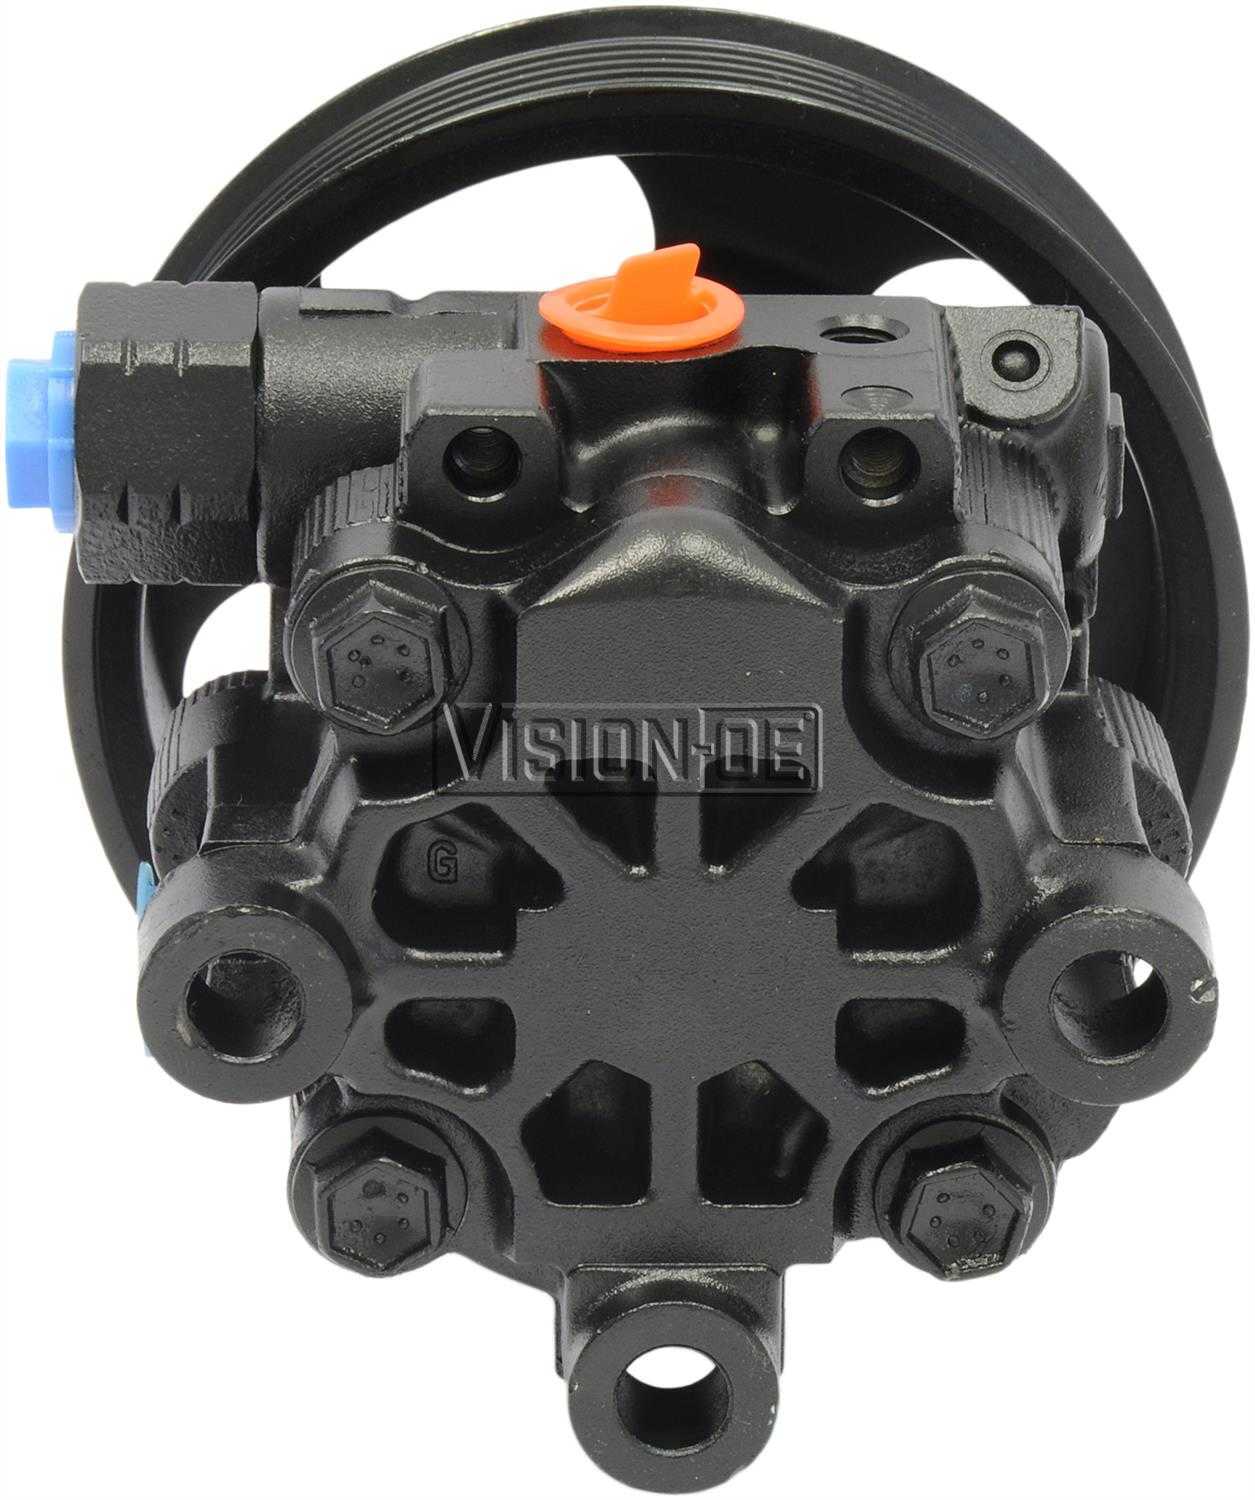 VISION-OE - Reman Power Steering Pump - VOE 990-1108